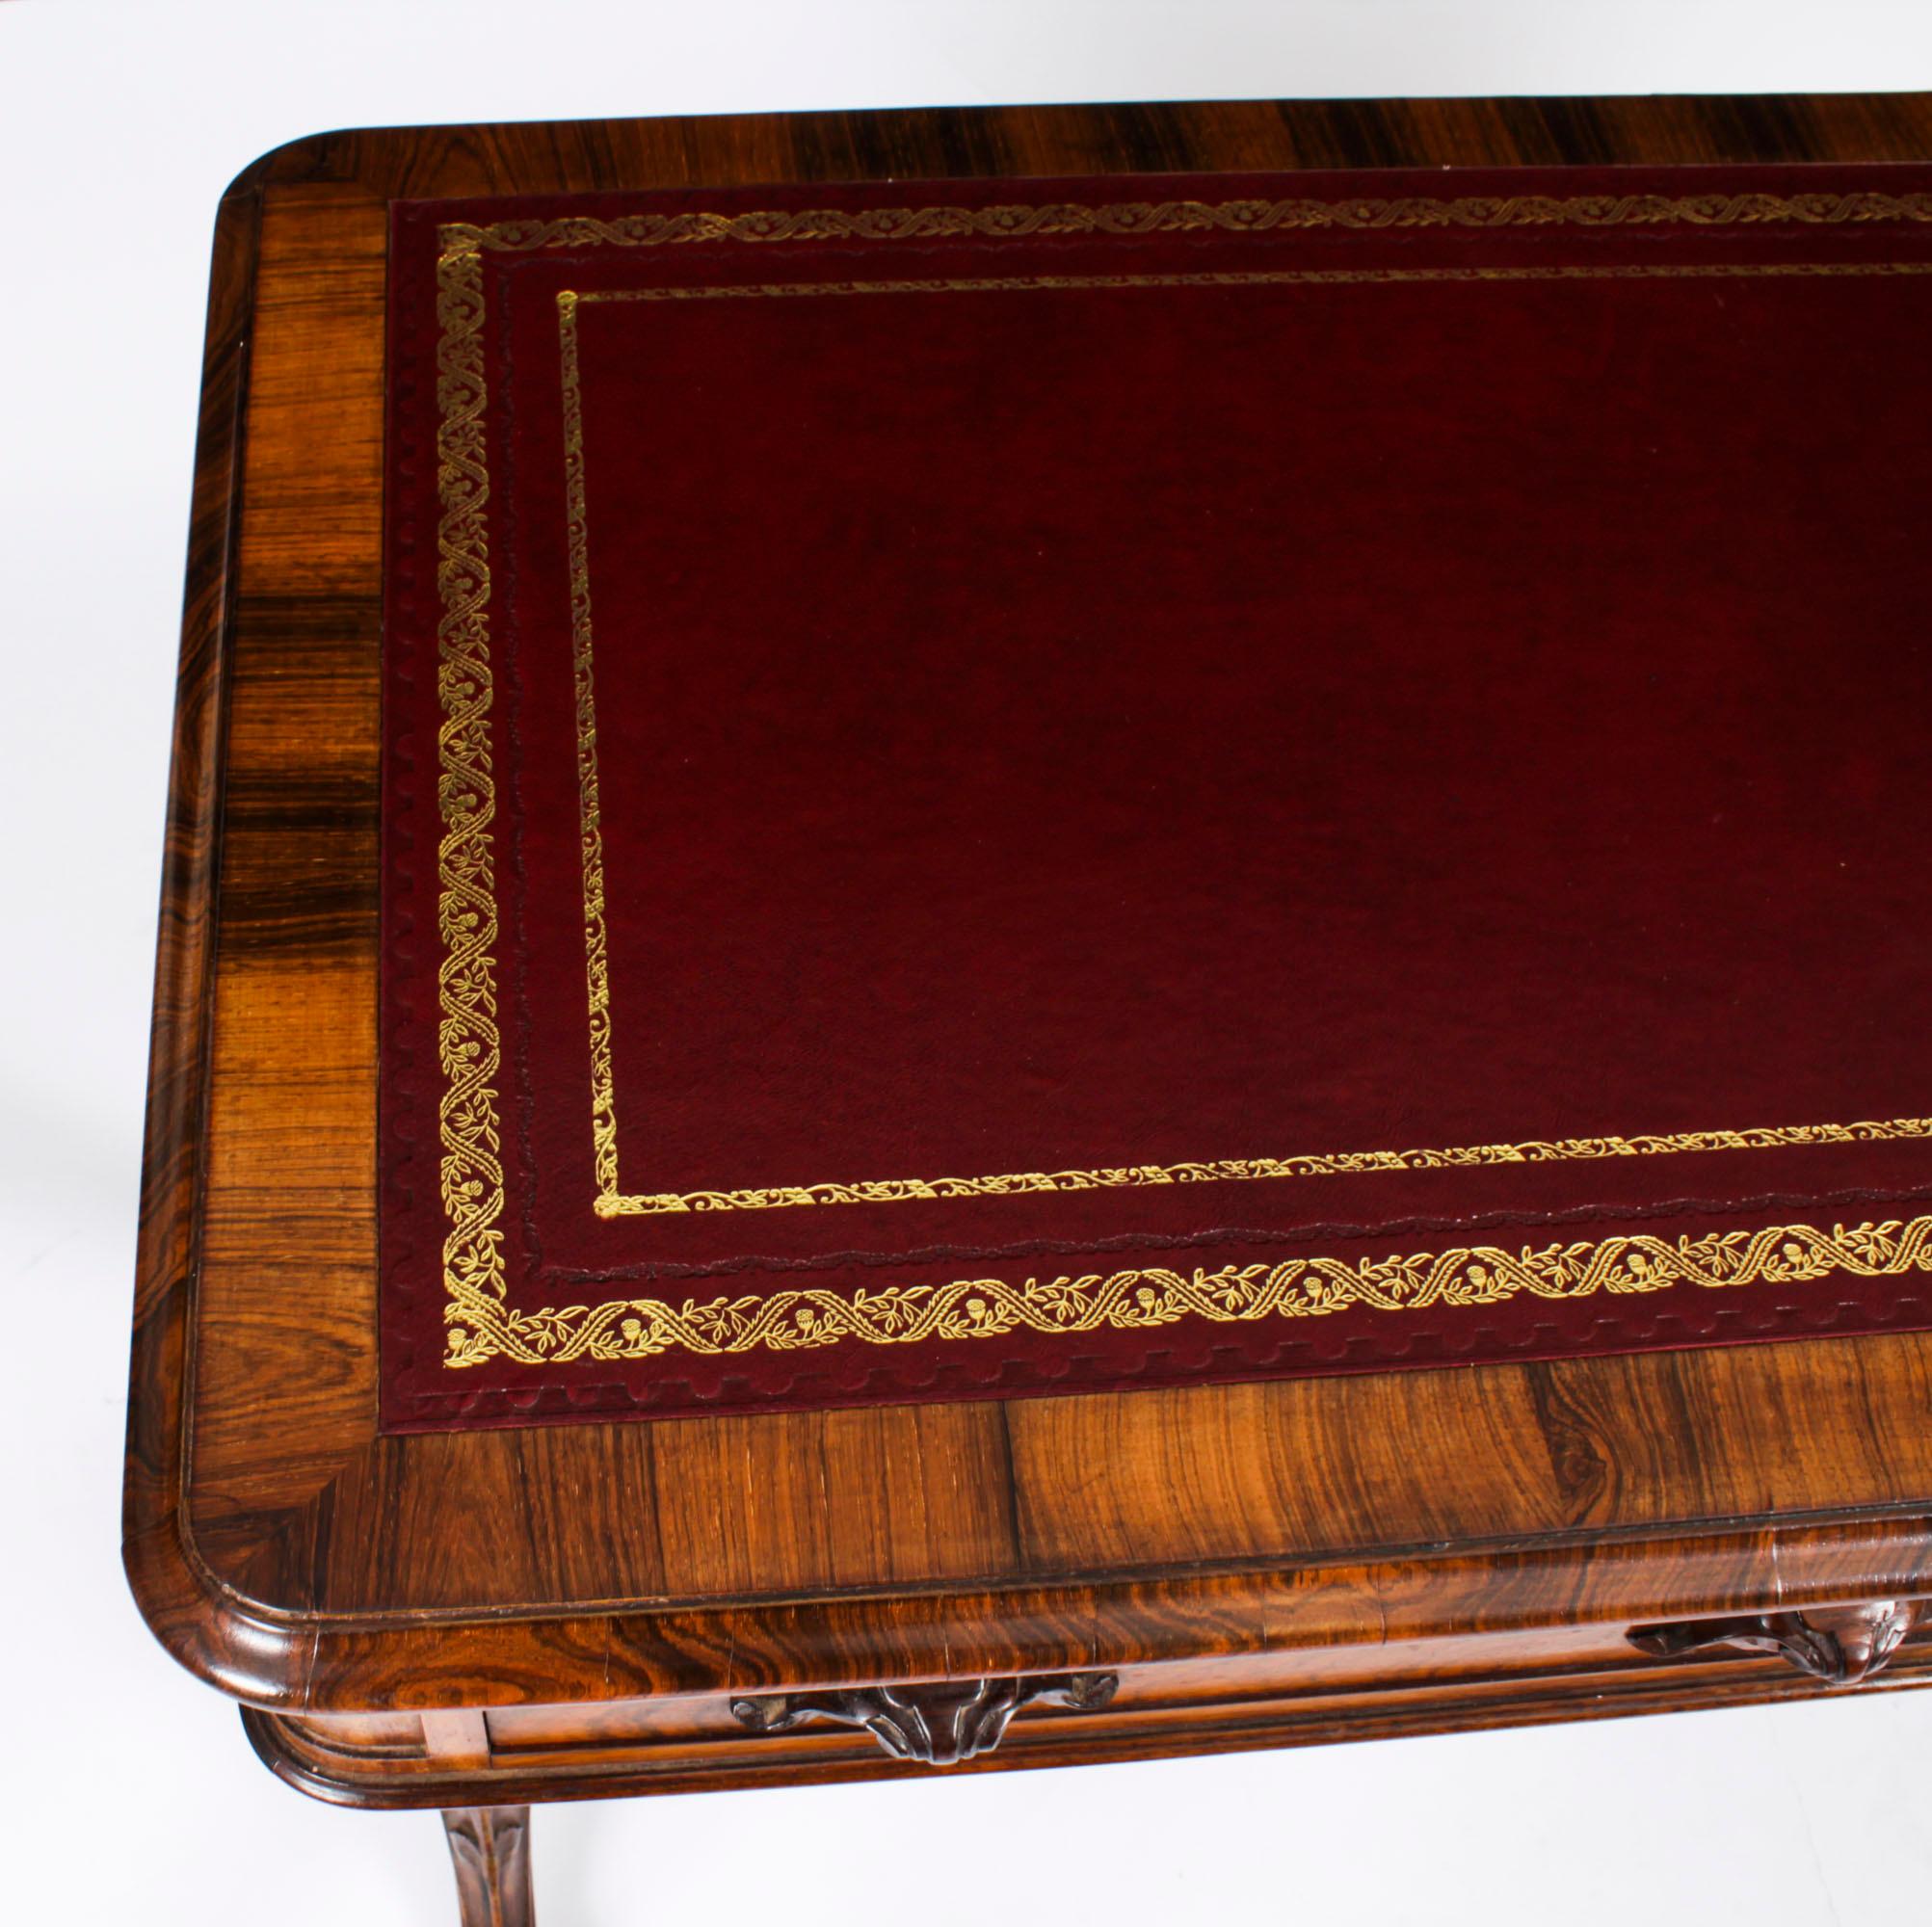 Voici une élégante antiquité victorienne Gonçalo Alves  table à écrire d'Edwards & Roberts,  Circa 1850 en date.

Le plateau est orné d'une surface d'écriture en cuir bourgogne estampé à l'or, au-dessus de deux tiroirs en frise. Il repose sur